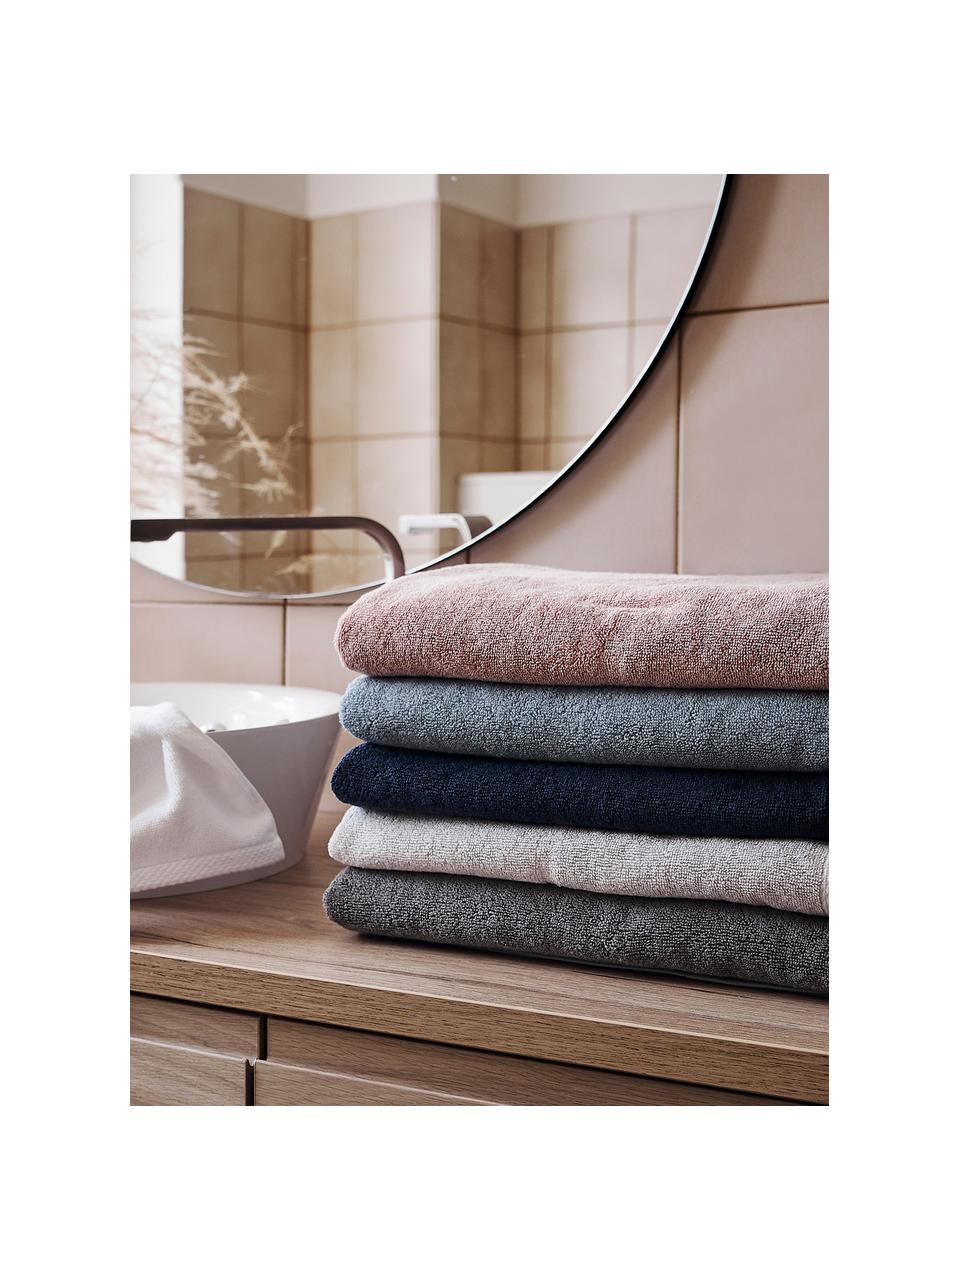 Eenkleurige handdoek Comfort, verschillende formaten, Lichtgrijs, Handdoek, B 50 x L 100 cm, 2 stuks